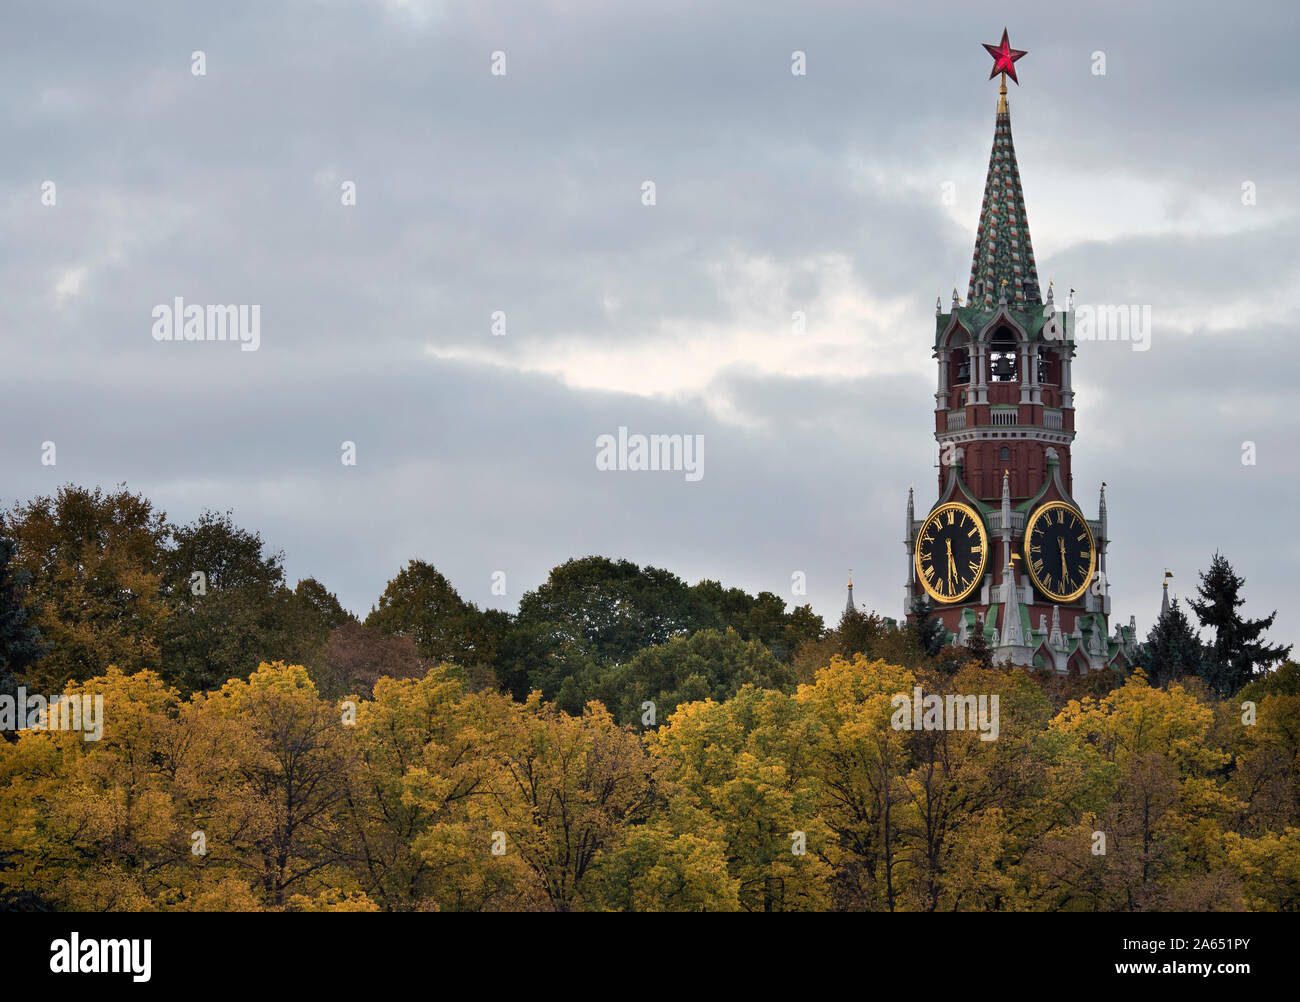 Moskau, Russland, Aussicht auf Spasskaja Turm der Moskauer Kreml mit einer Uhr. Stockfoto